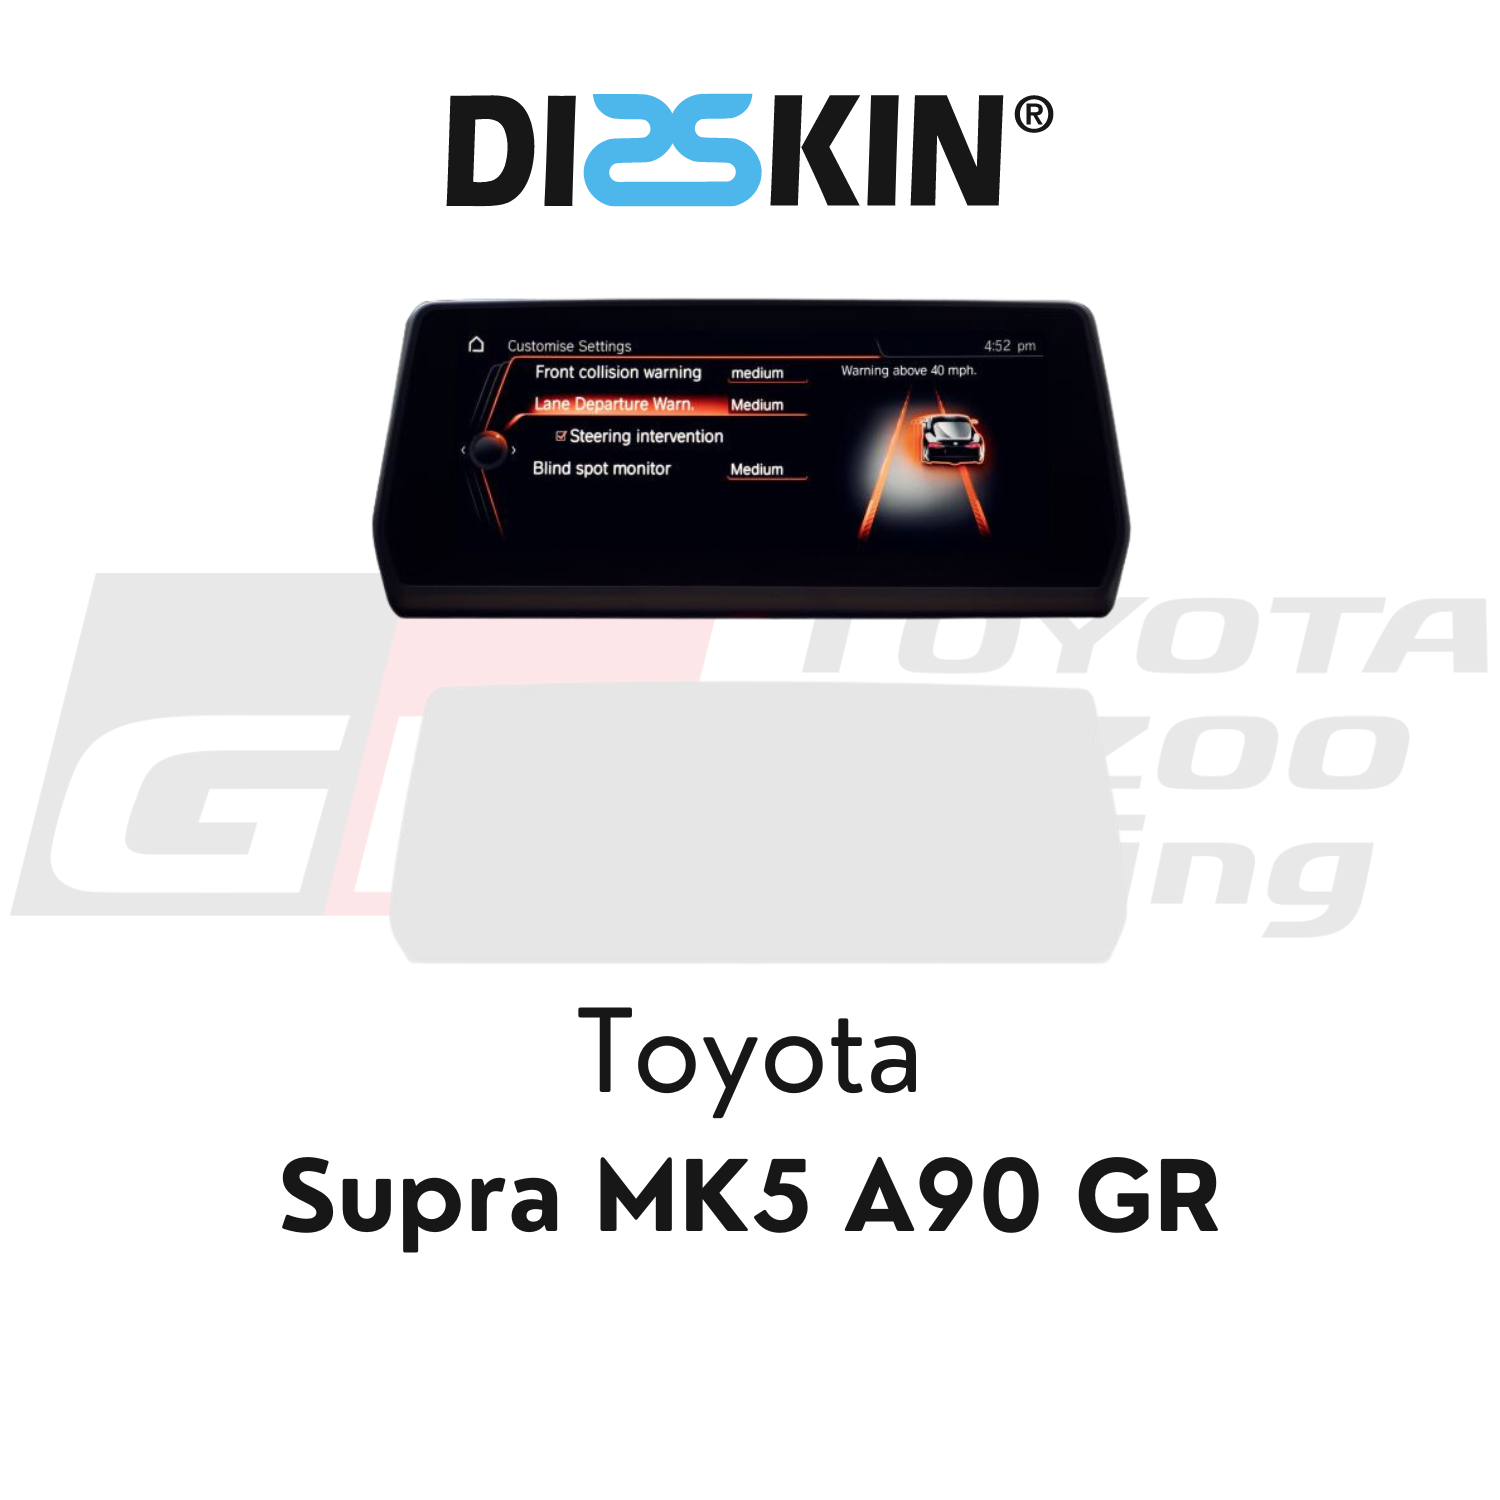 http://machvier.de/cdn/shop/files/Toyota-Supra-MK5-A90-Disskin_1.png?v=1693986040